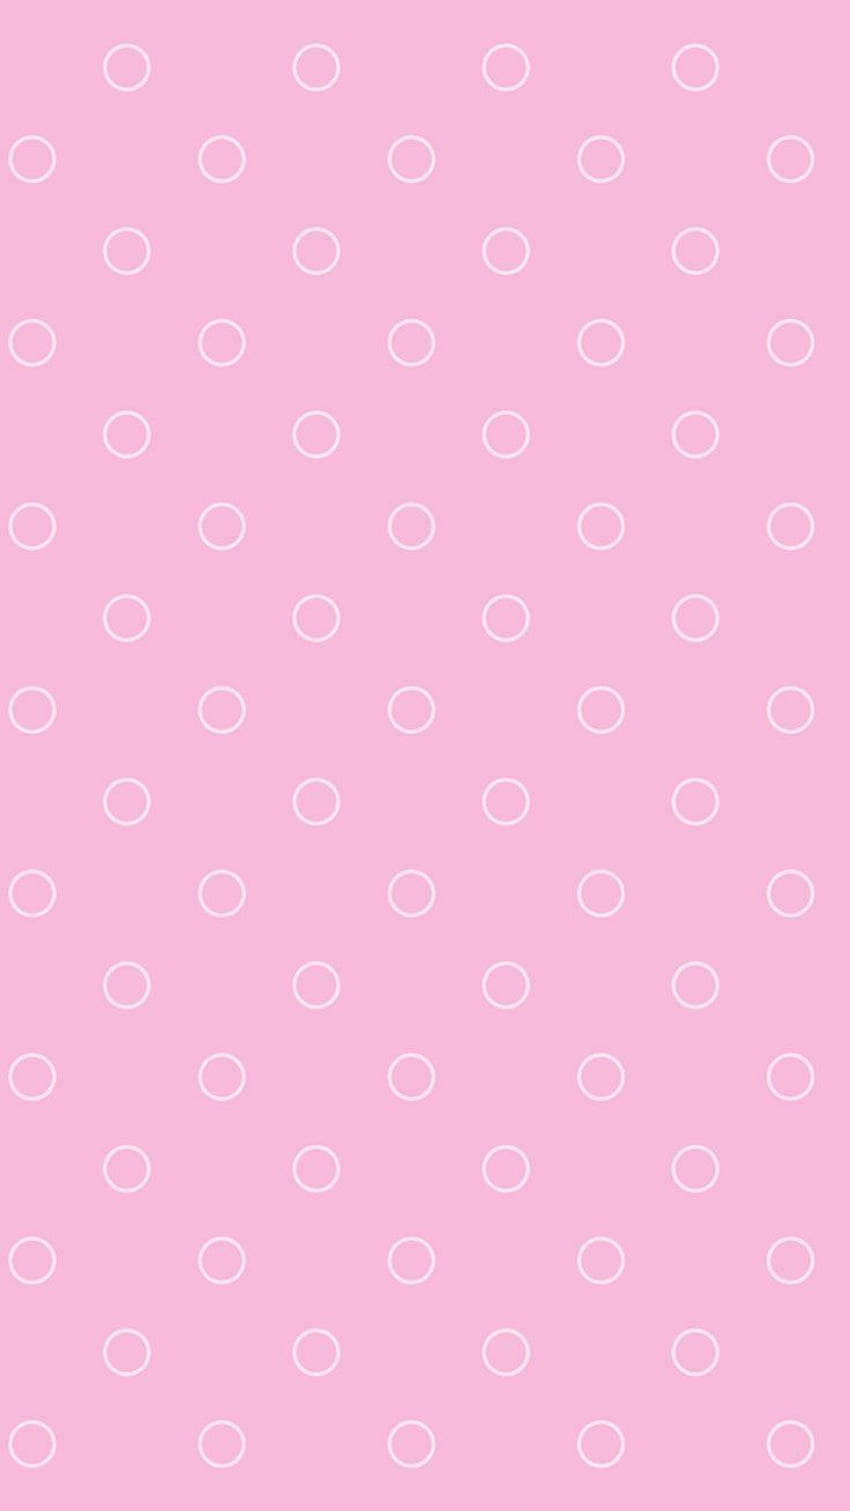 Pretty Pink iPhone Background: Nếu bạn yêu thích màu hồng thì Pretty Pink iPhone Background là một lựa chọn tuyệt vời. Những họa tiết tinh tế, những sắc màu đa dạng sẽ khiến cho điện thoại của bạn trở nên xinh đẹp và lung linh hơn. Click ngay để khám phá và tận hưởng những hình nền tuyệt vời này.